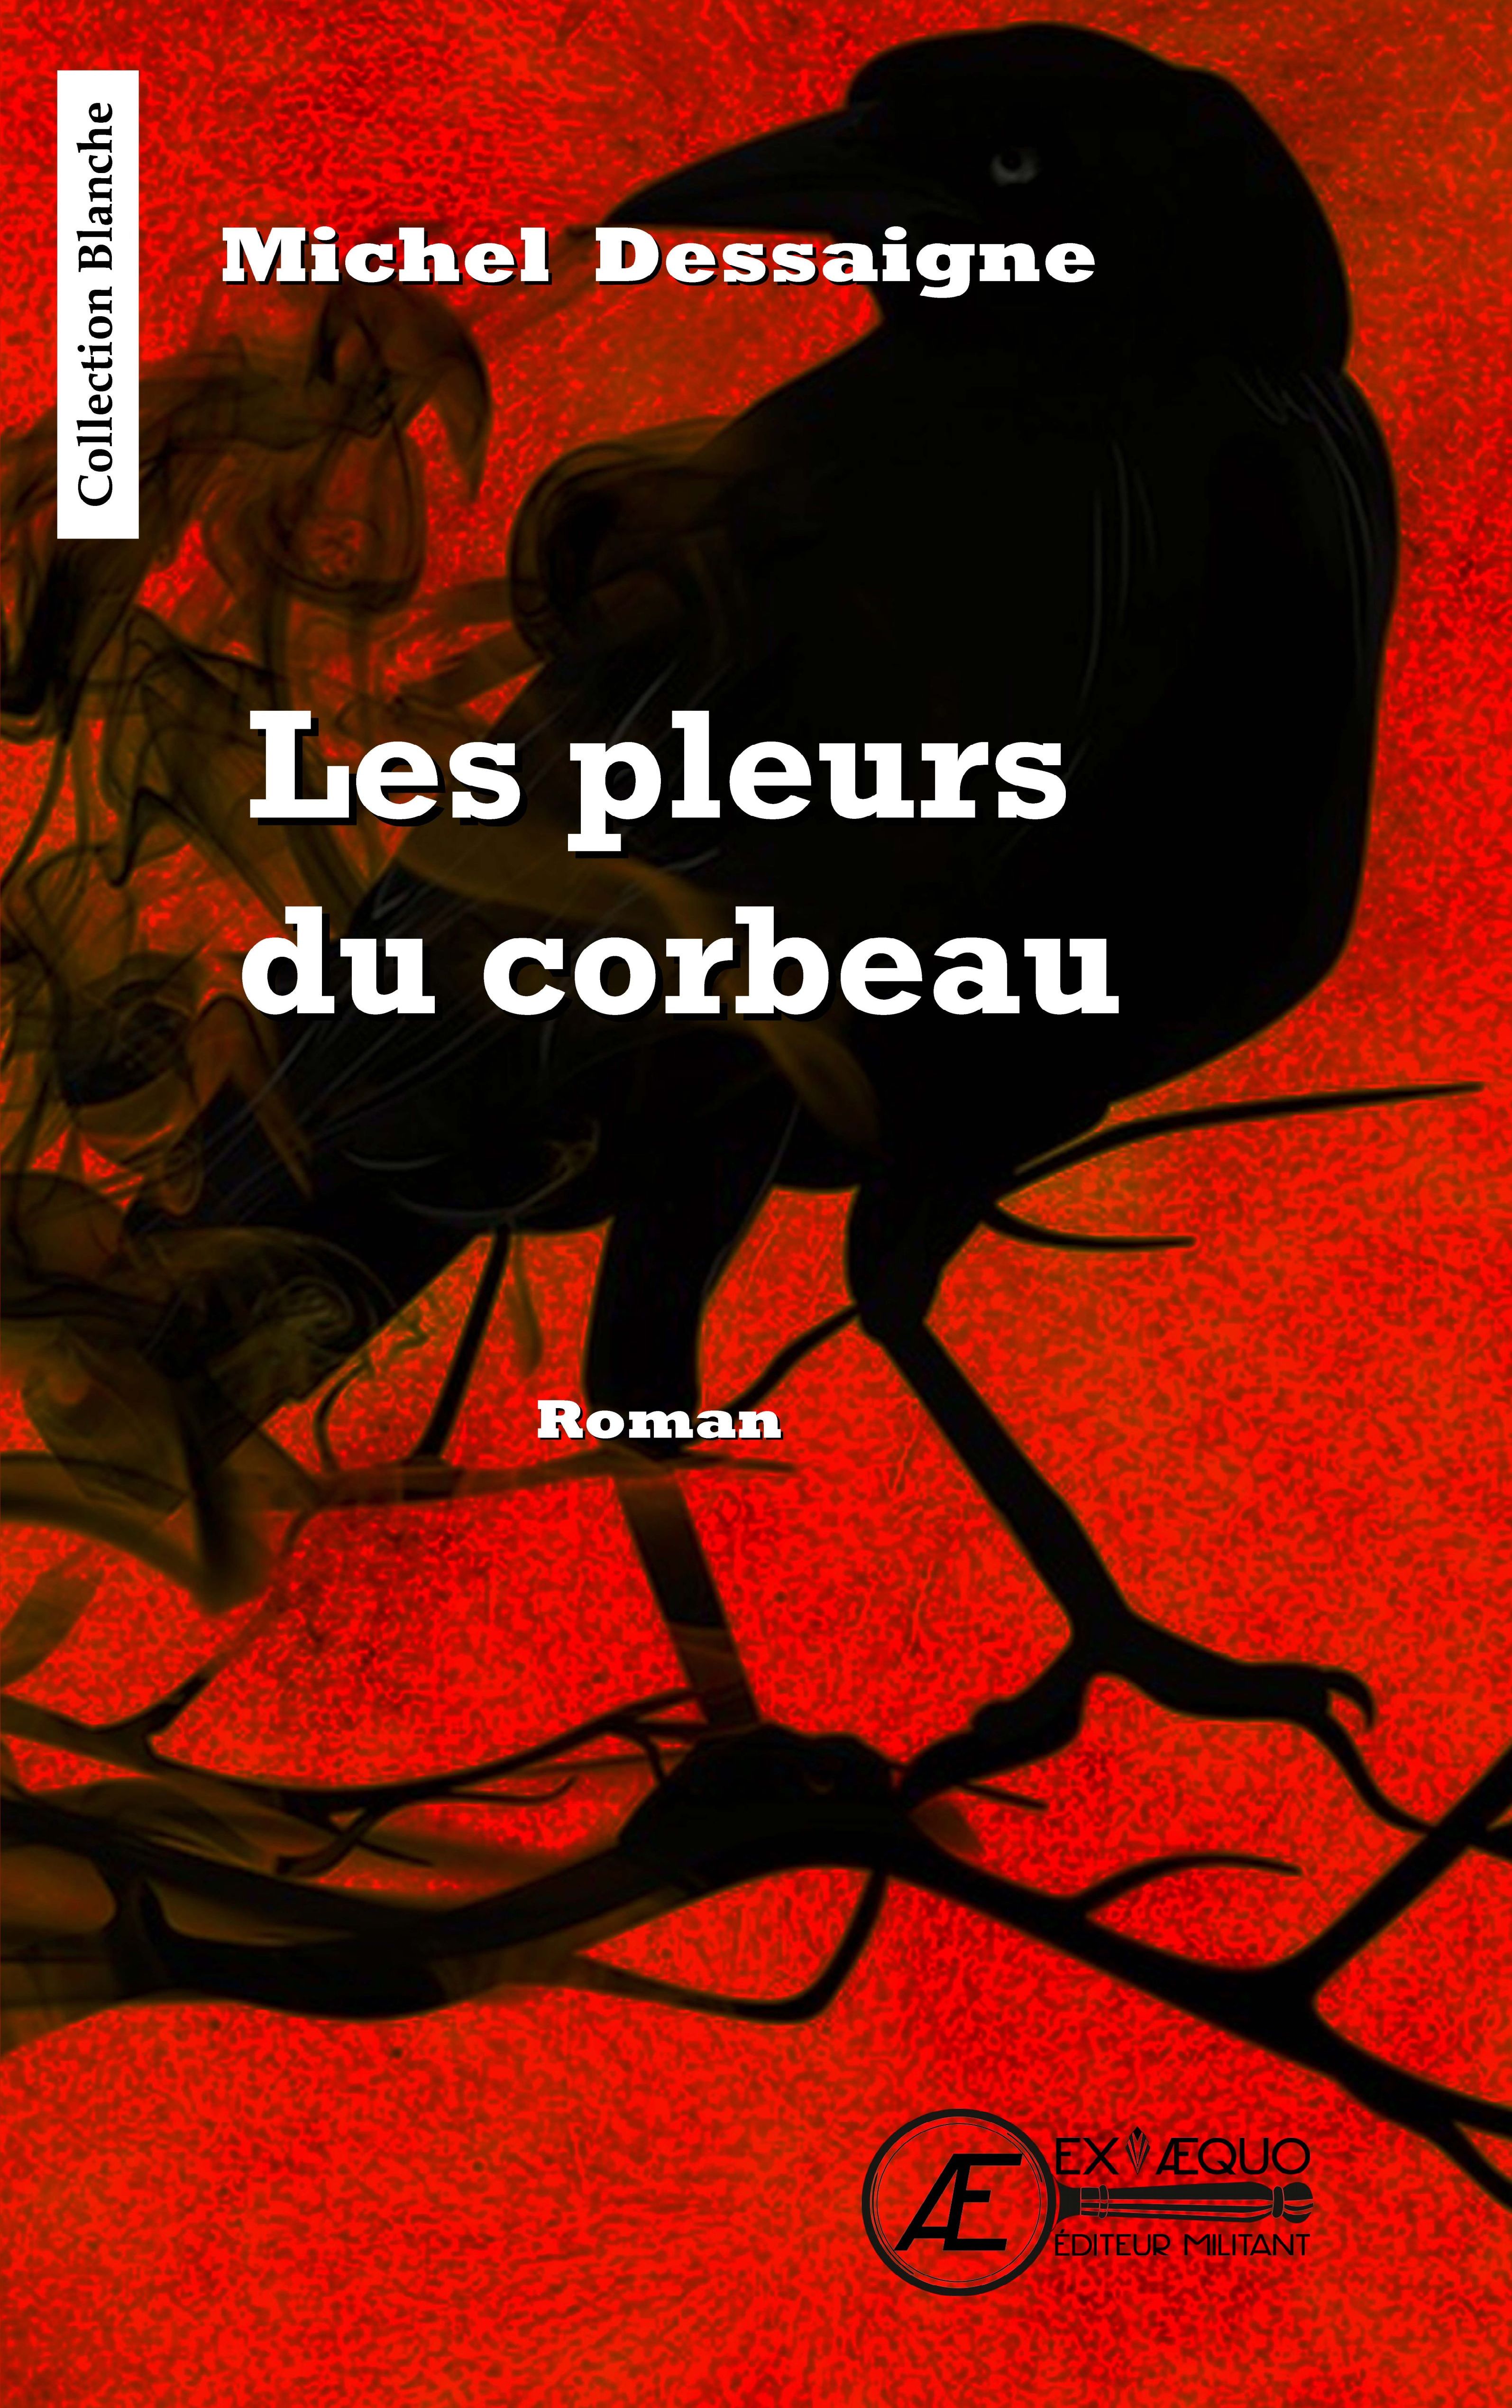 You are currently viewing Les pleurs du corbeau, de Michel Dessaigne